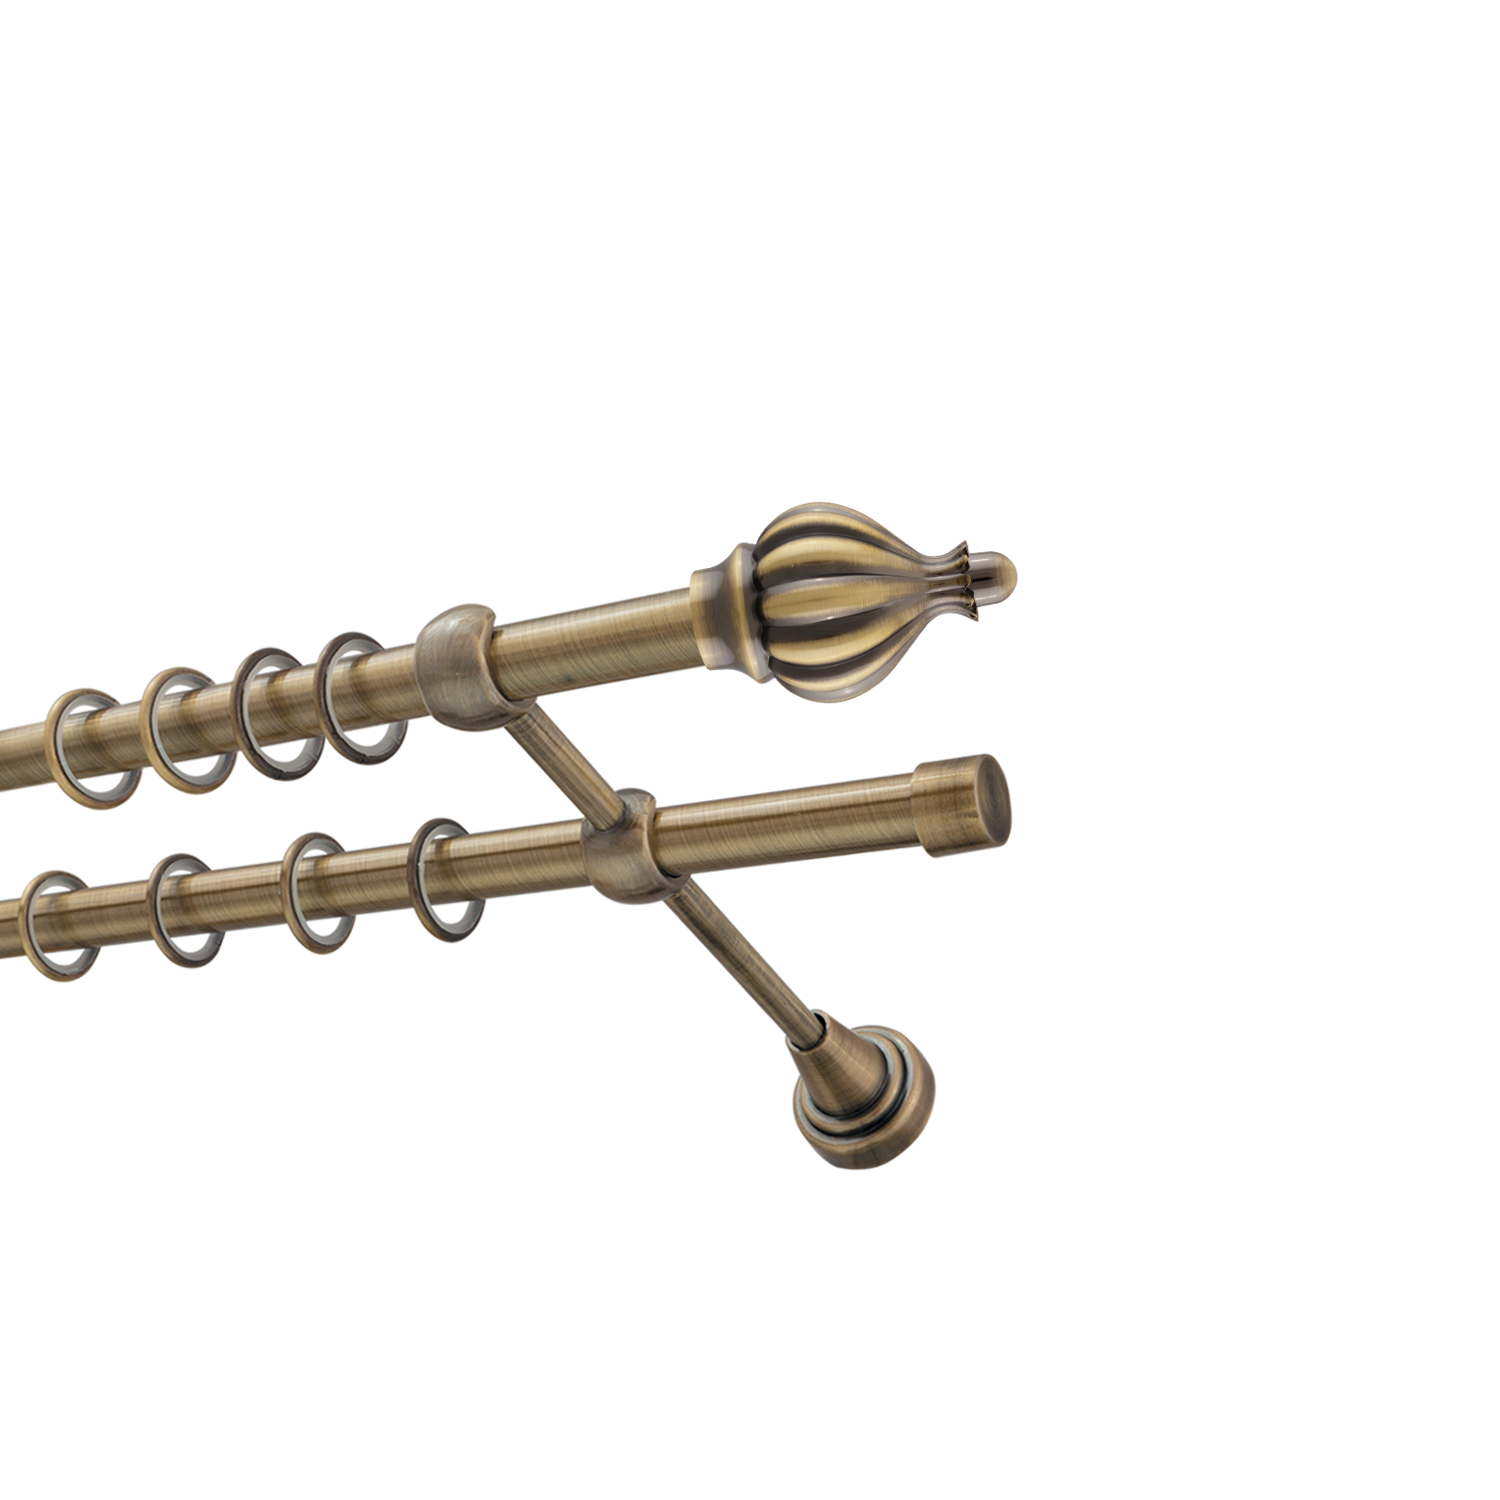 Металлический карниз для штор Афродита, двухрядный 16/16 мм, бронза, гладкая штанга, длина 200 см - фото Wikidecor.ru